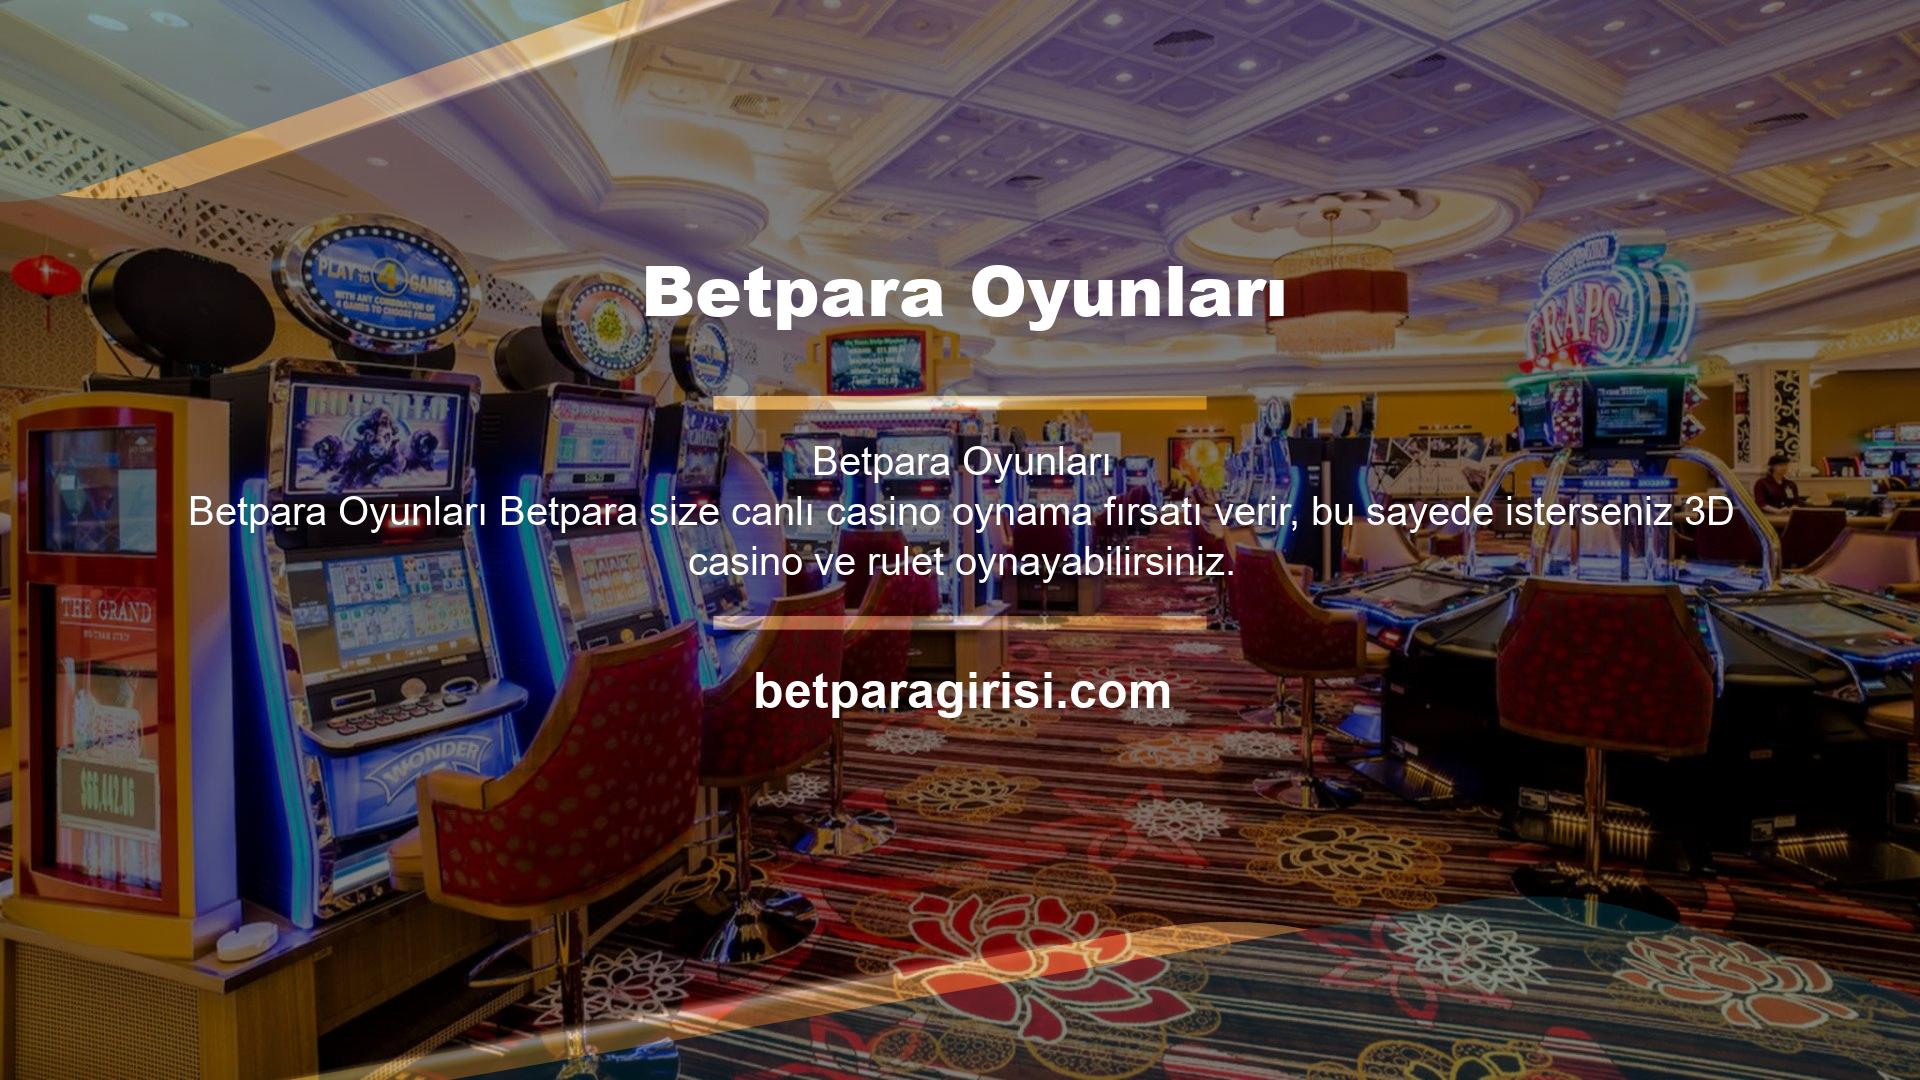 Betpara Oyunları Web sitemizdeki Canlı Casino sayfasını ziyaret ederseniz, Canlı Blackjack, Canlı Rulet ve Canlı Bakara oyunlarını da sunuyoruz